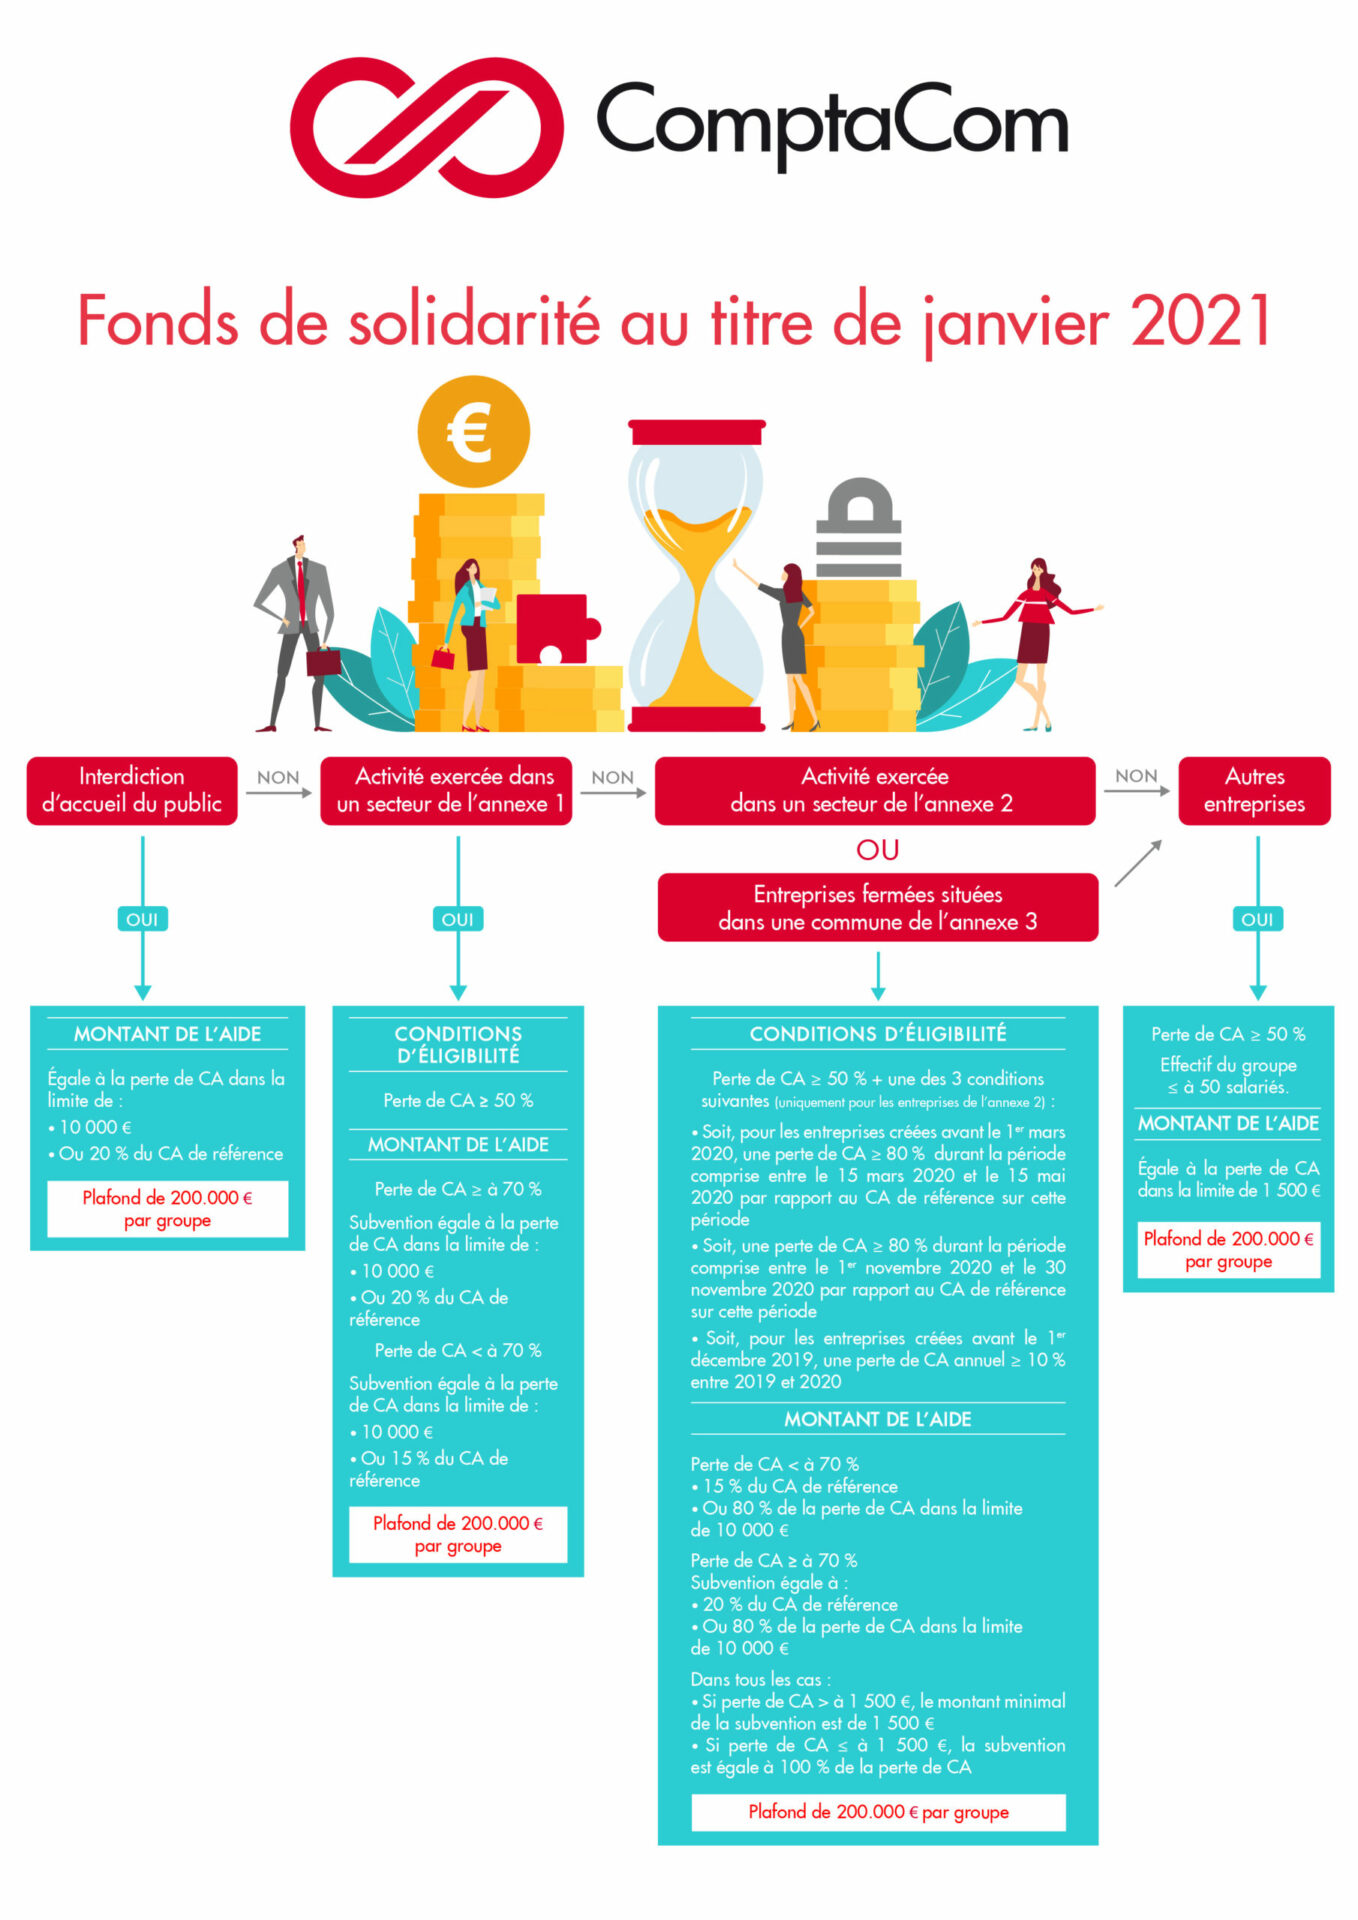 Conditions d’accès au Fonds de solidarité au titre de janvier 2021